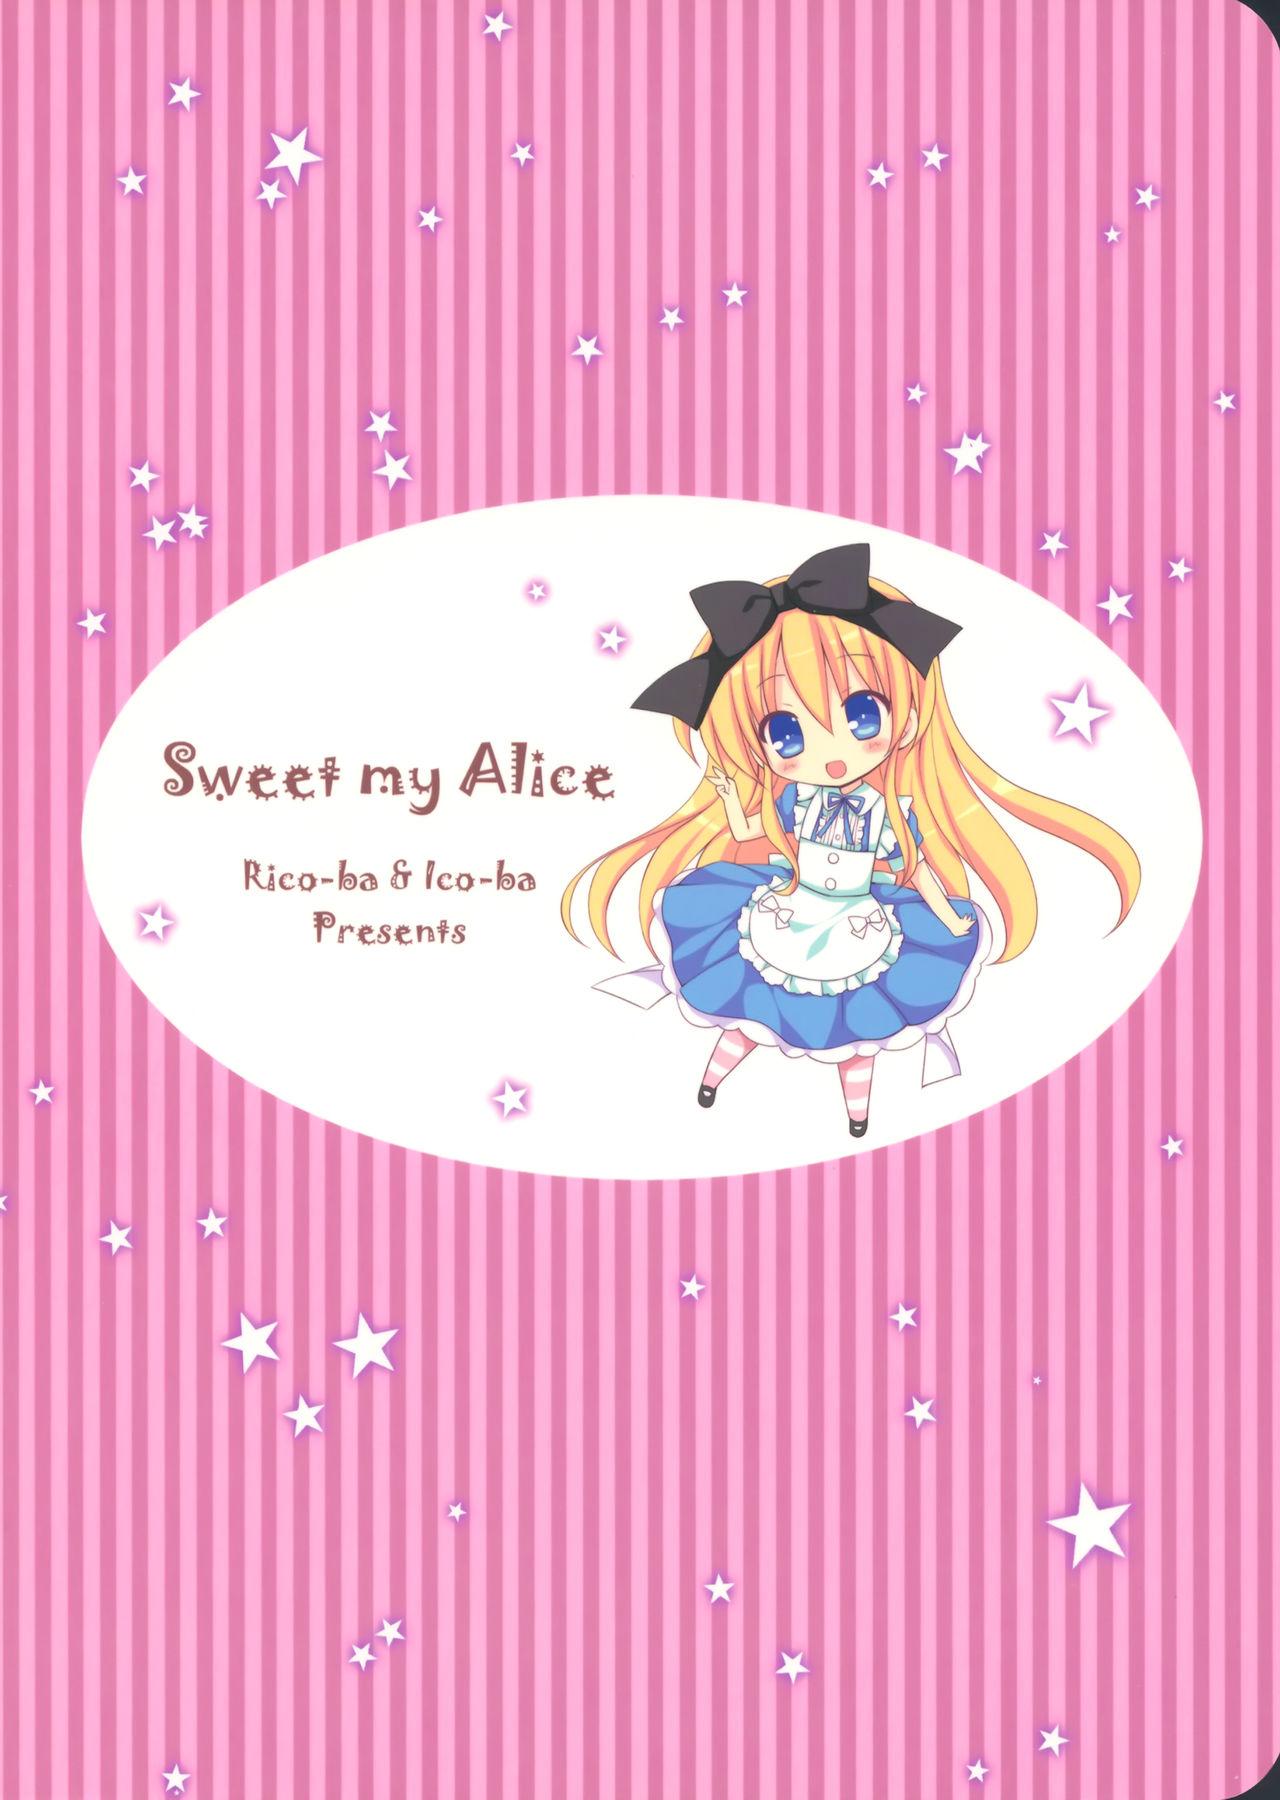 Sweet my Alice 19